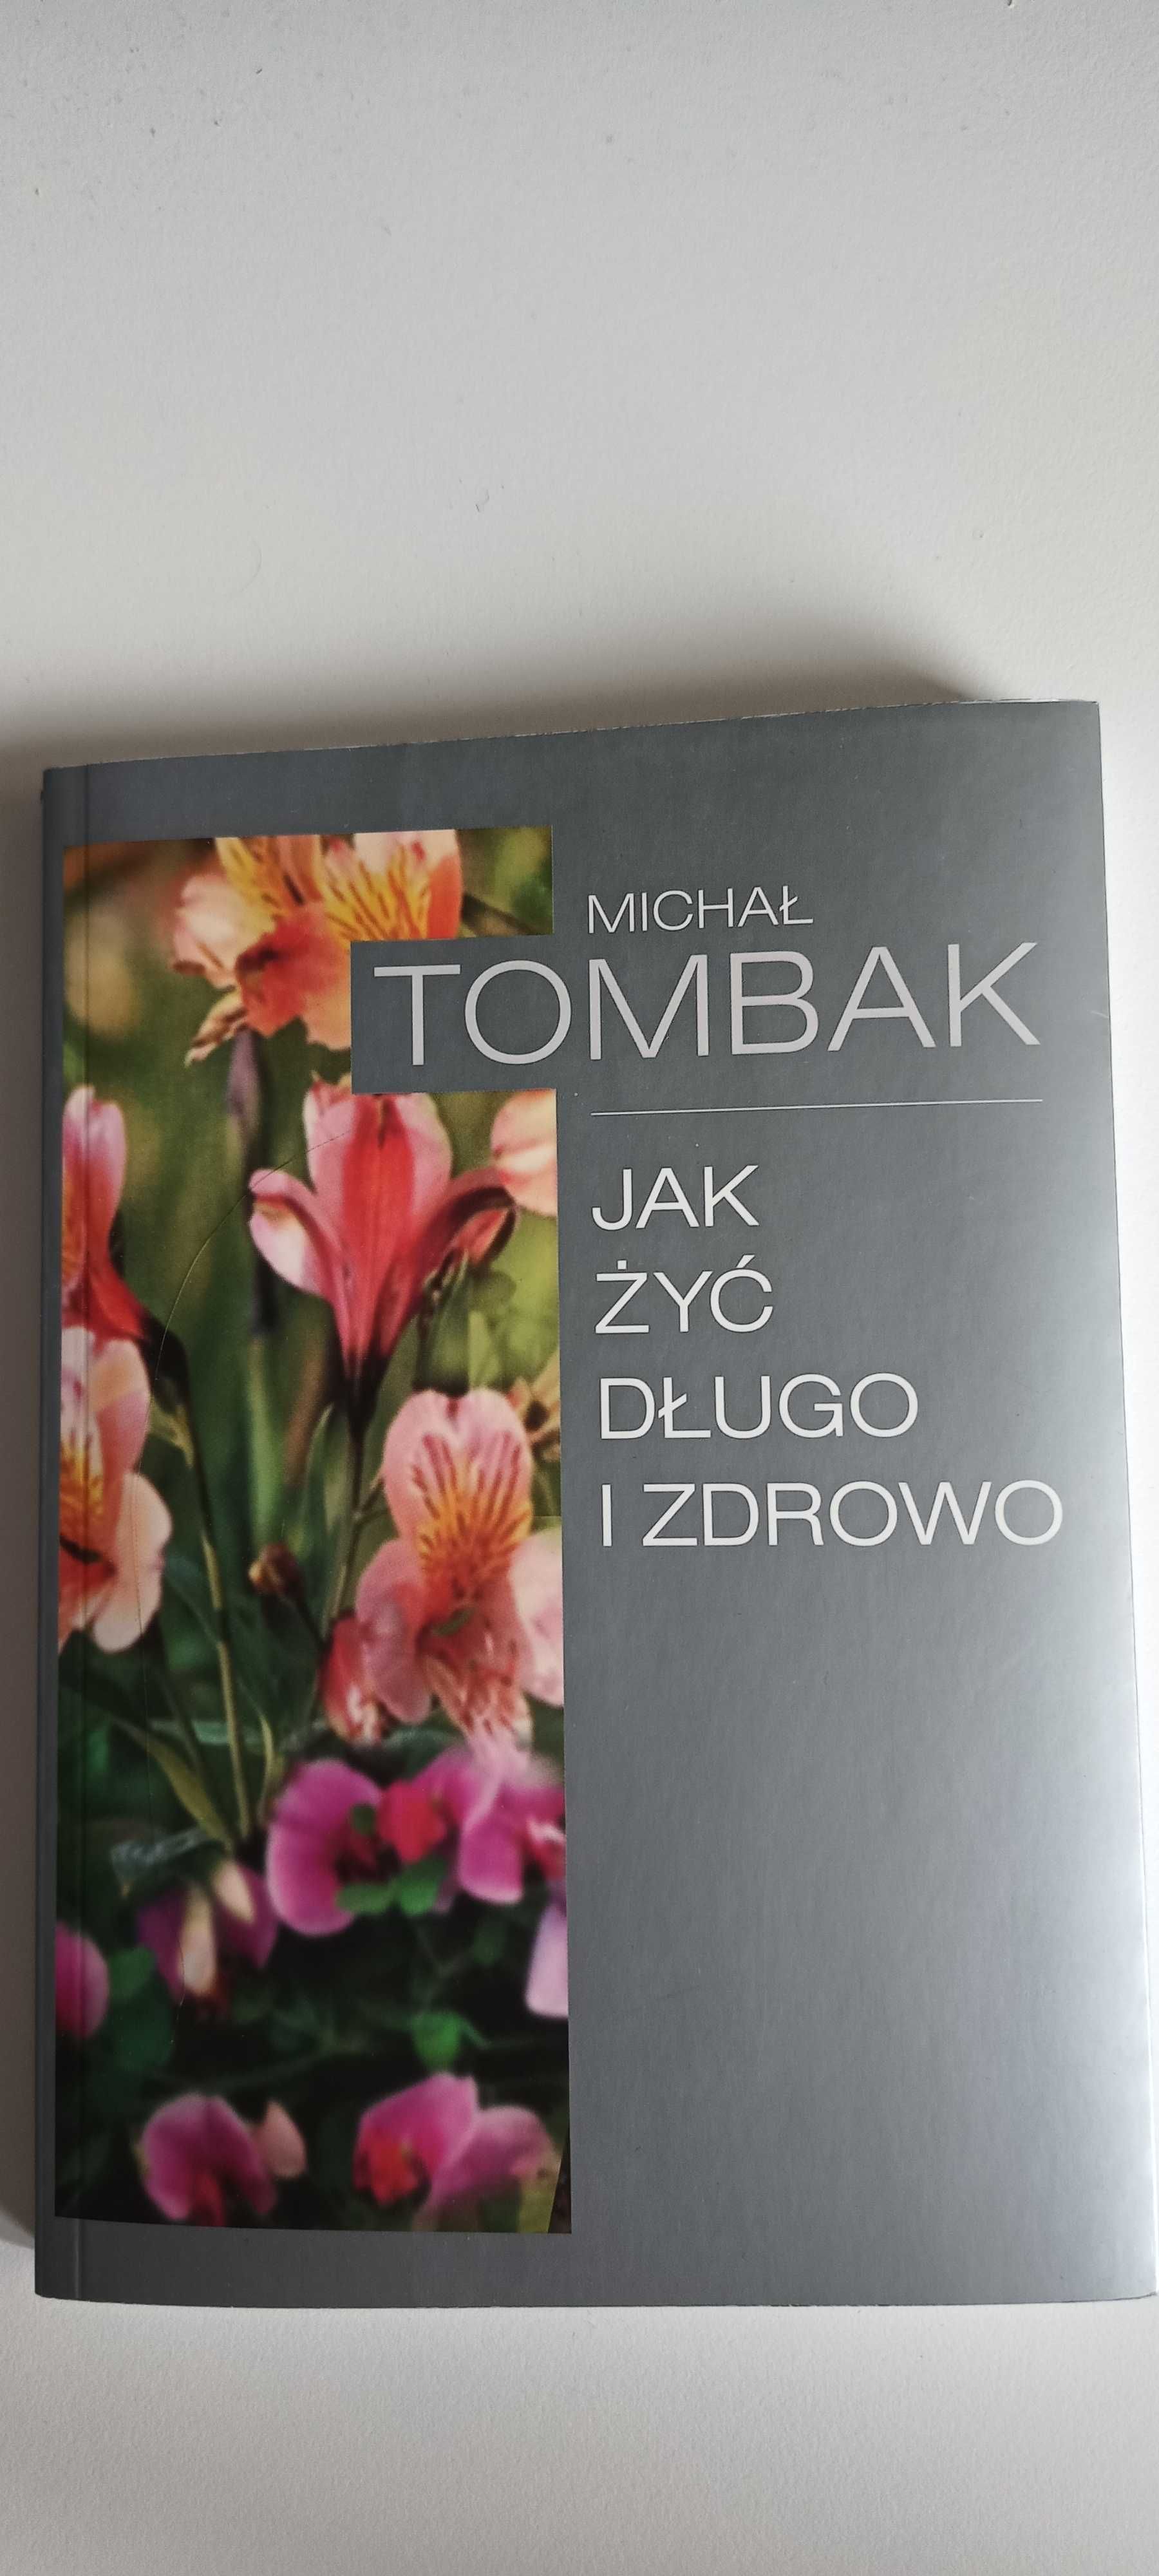 Książka "Jak żyć długo i zdrowo", Michał Tombak